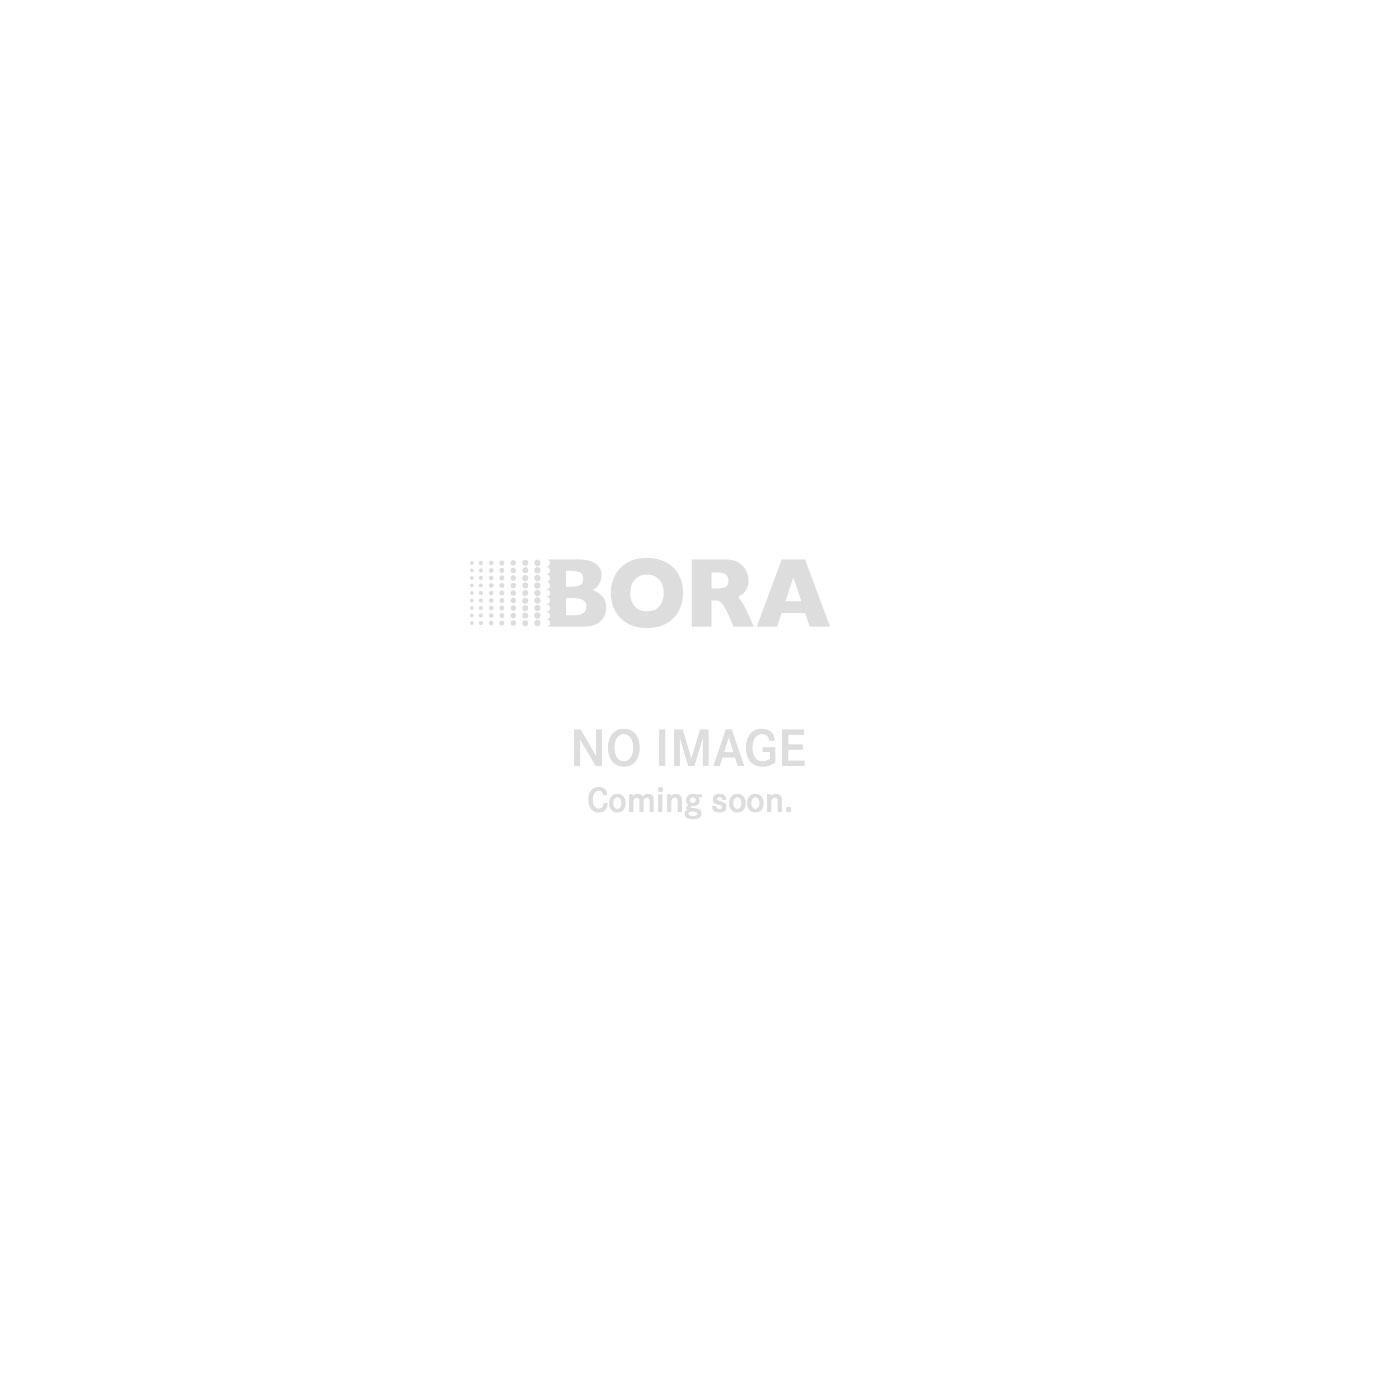 La exitosa trayectoria de BORA X Pure: Red Dot Award a la innovación de un producto